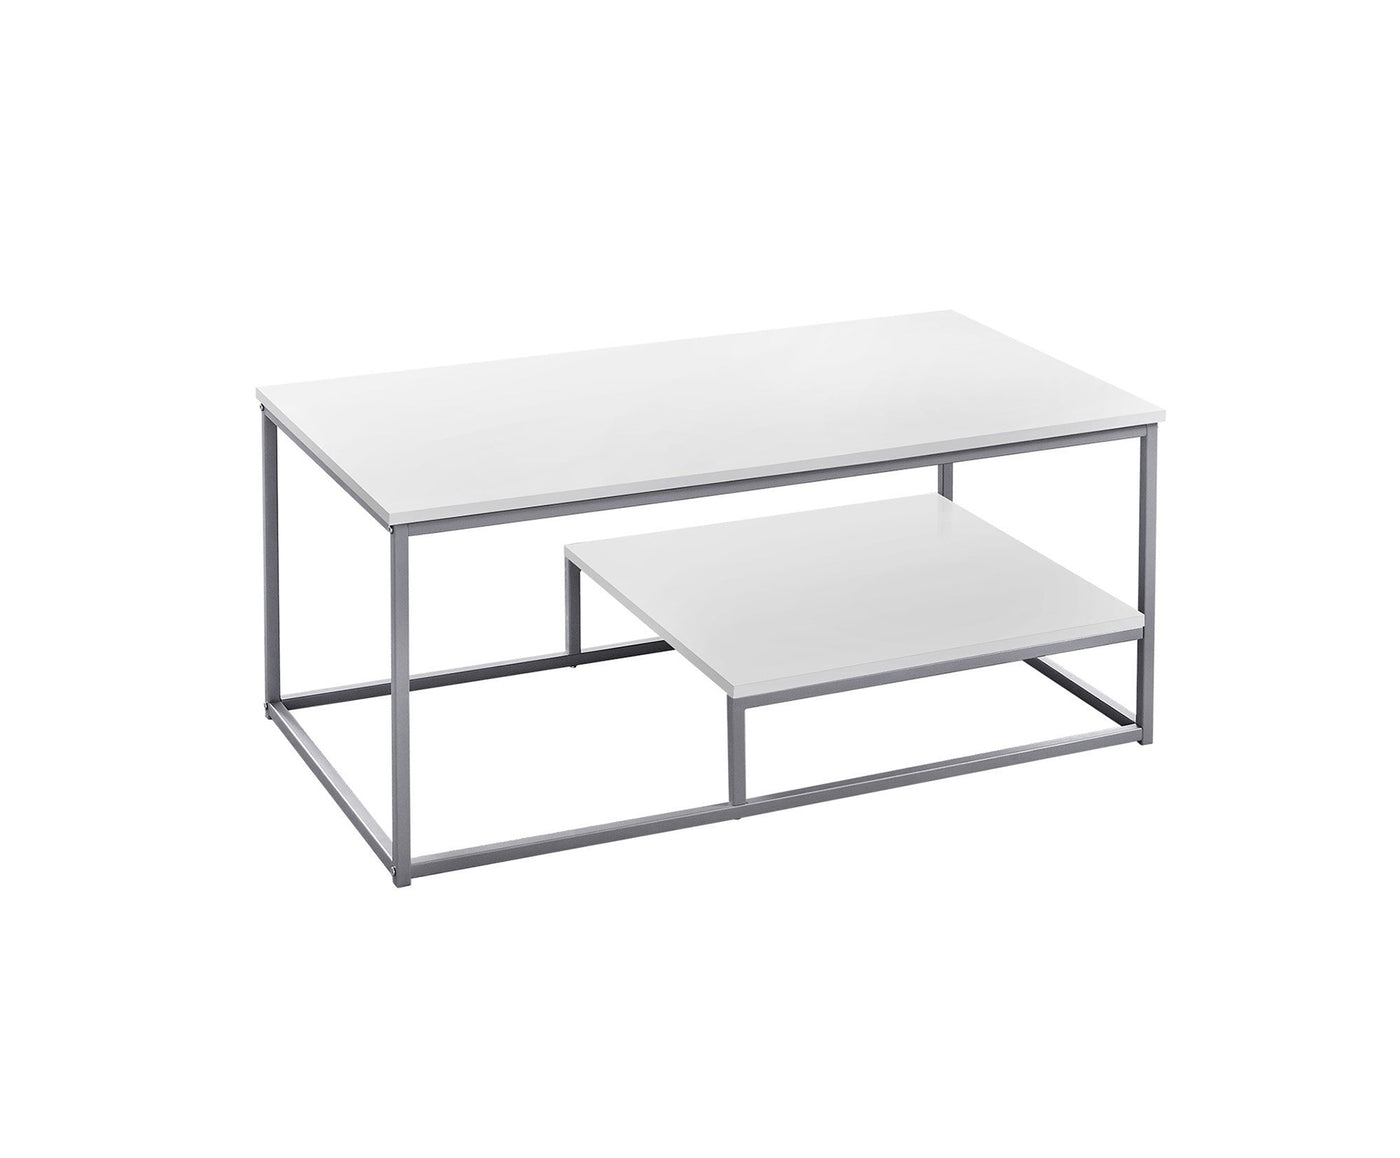 White Silver Metal Table Set - 3Pcs Set - Coffee Tables